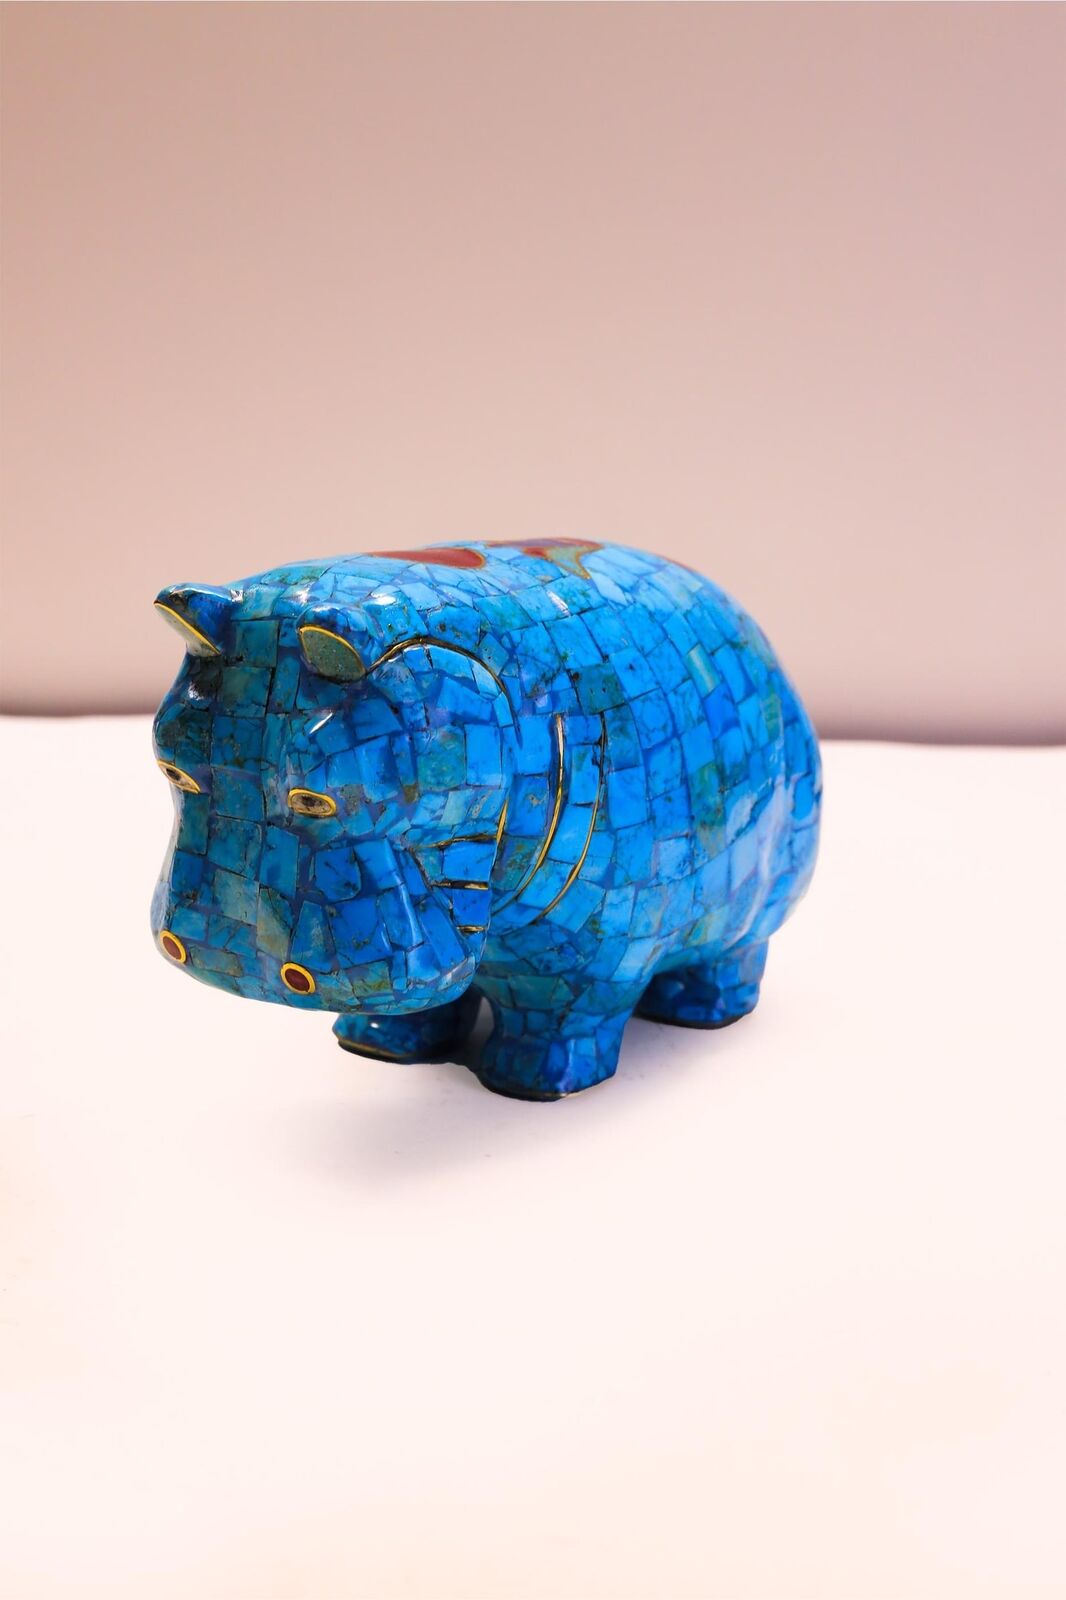 Hippopotamus like the museum piece - Gemstone Hippopotamus